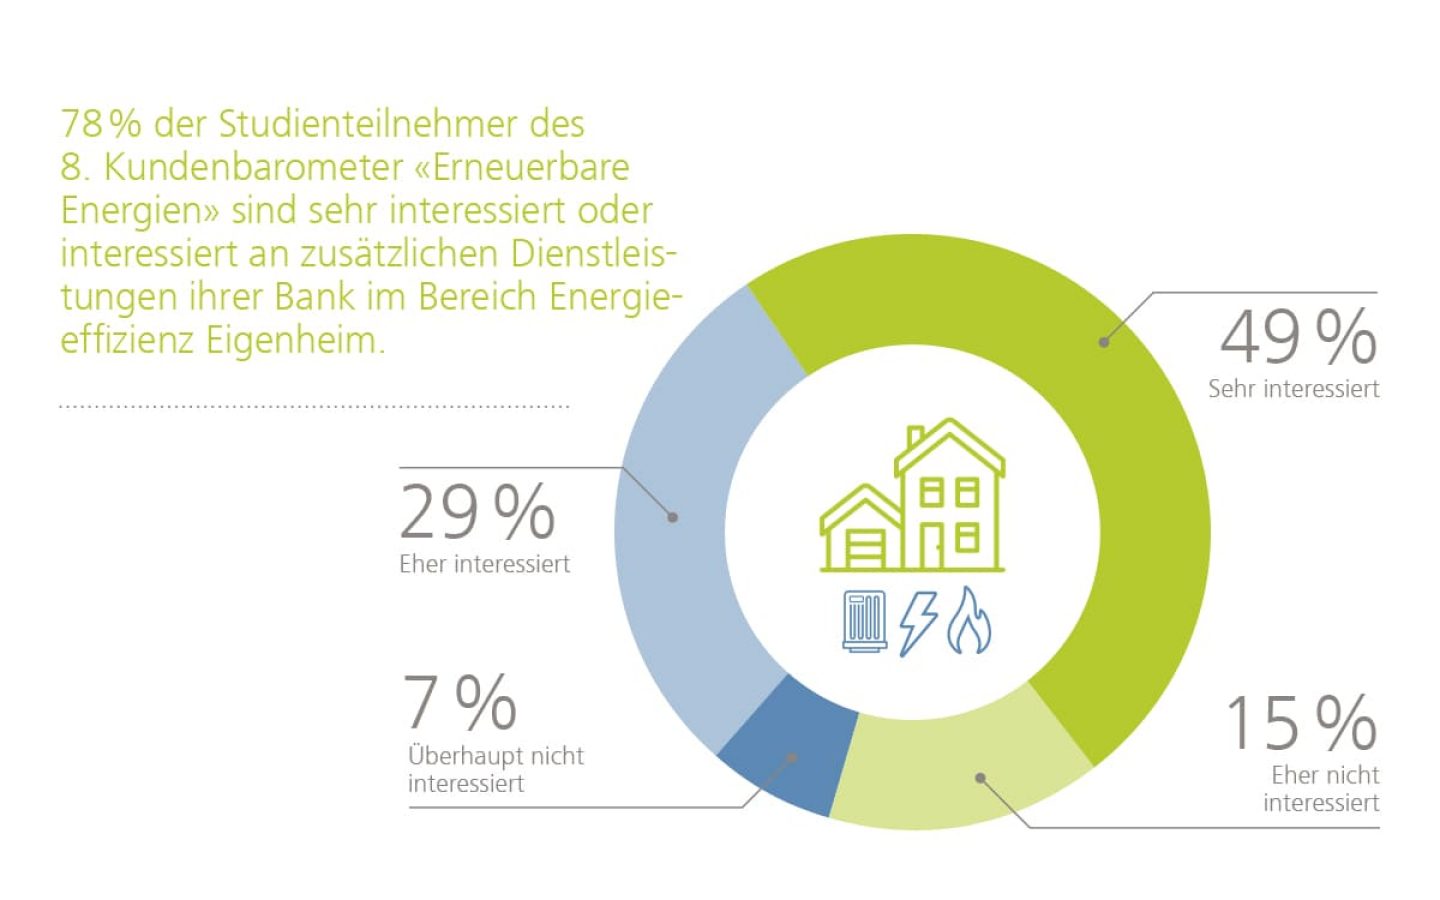 Dienstleistungen der Banken im Bereich Energieeffizienz Eigenheim